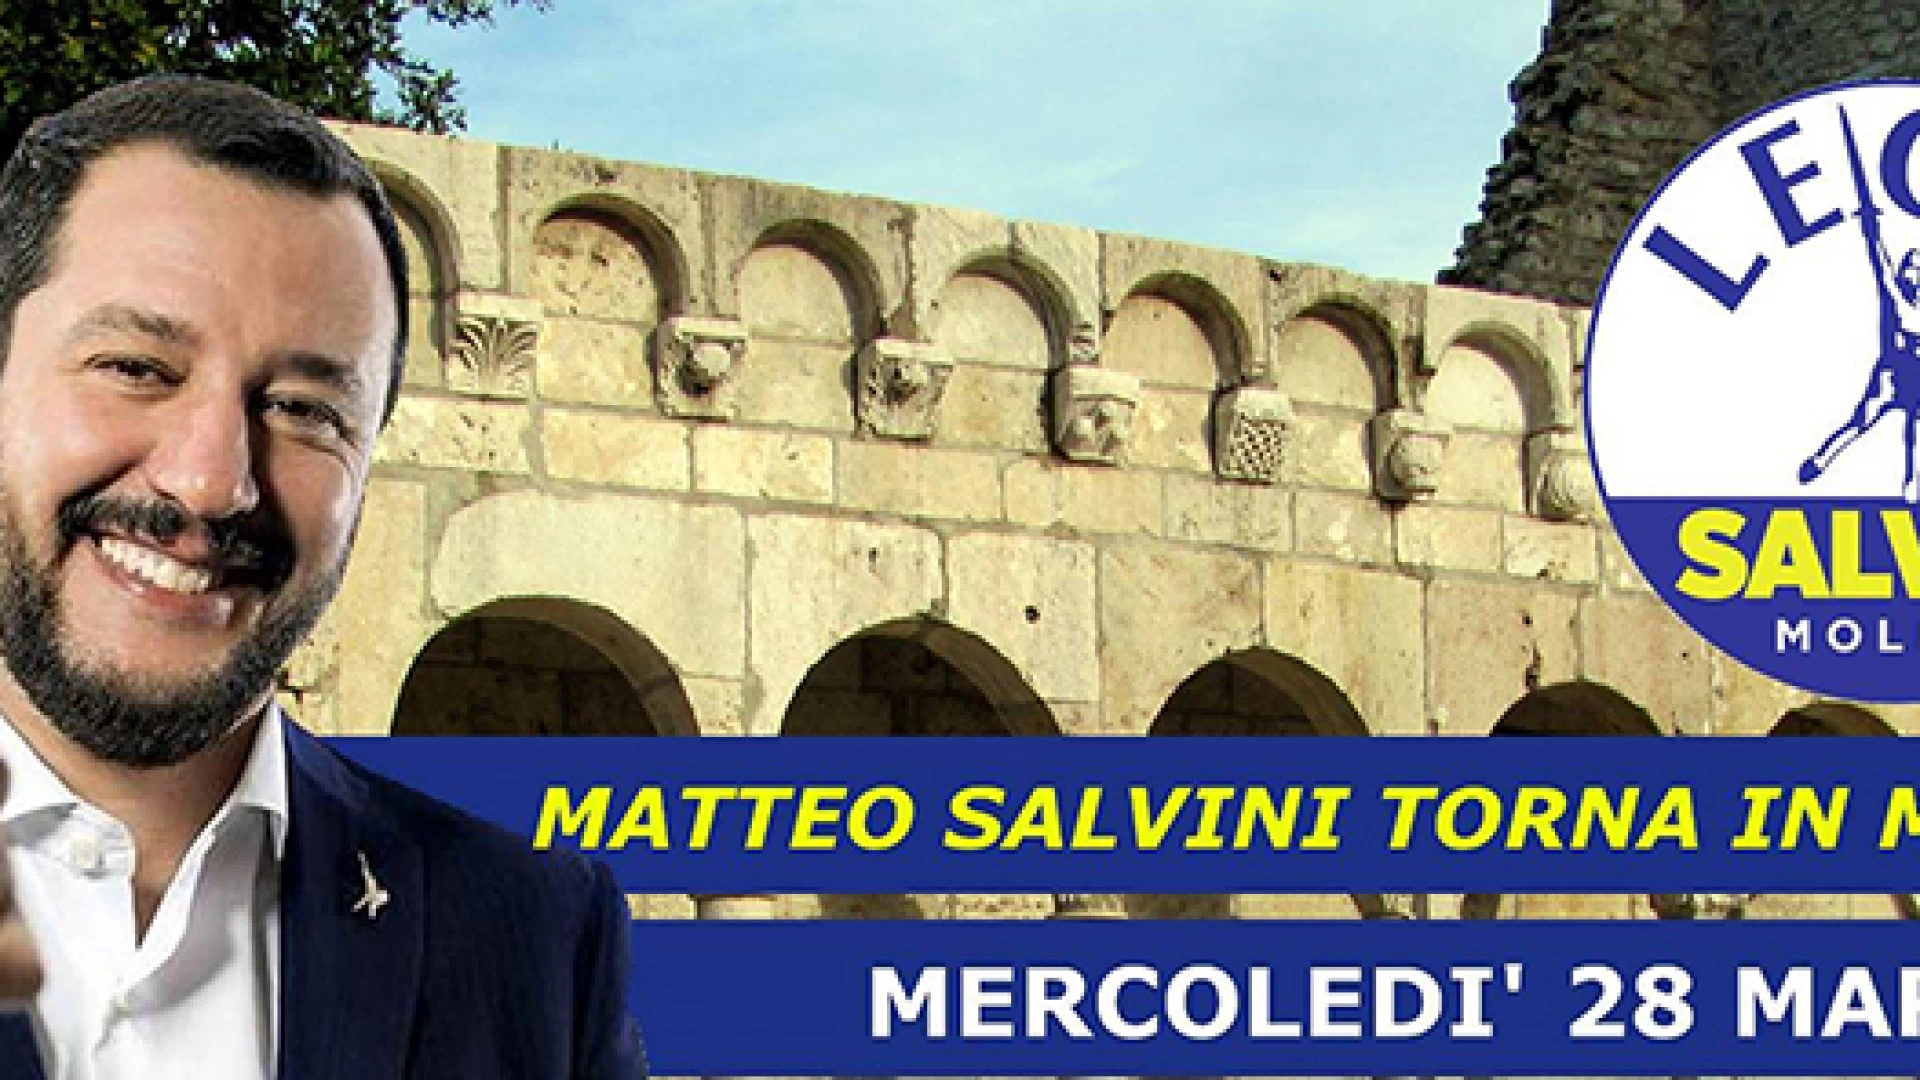 Isernia-Venafro: Salvini torna in Molise per la presentazione della lista alla regionali. Appuntamento fissato a mercoledì 28 marzo.